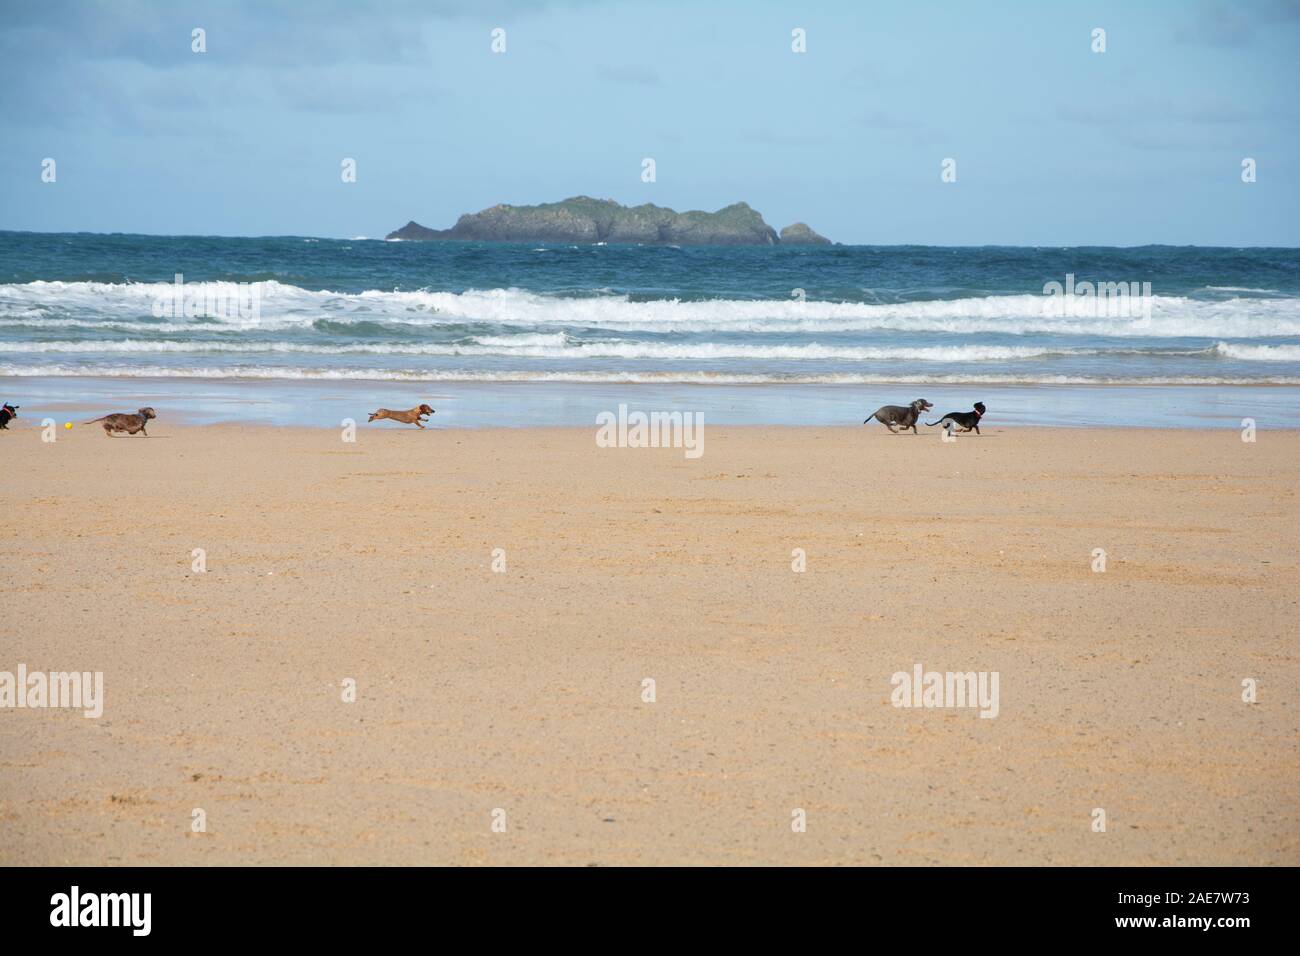 Oktober 2019 - Eine Gruppe von dachsunds Hunde spielen bei Harlyn Bay Beach, östlich von Trevose Head, in der Nähe von Padstow in Cornwall, Großbritannien Stockfoto